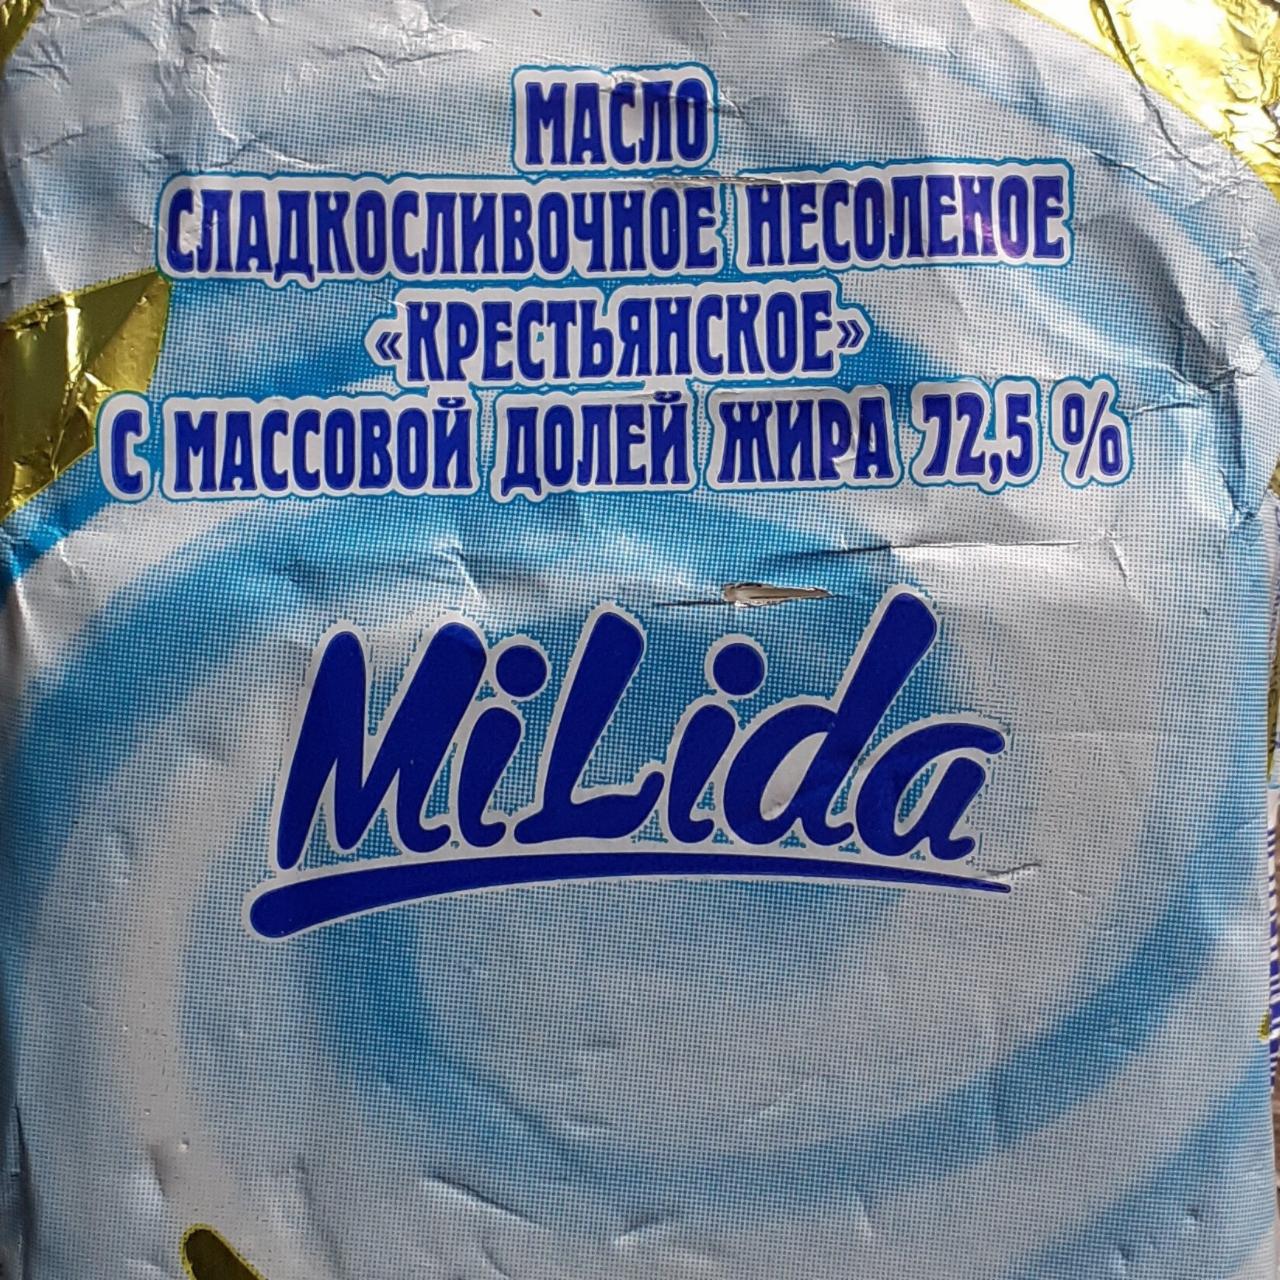 Фото - Масло сладкосливочное несоленое 'Крестьянское' с массовой долей жира 72,5% MiLida